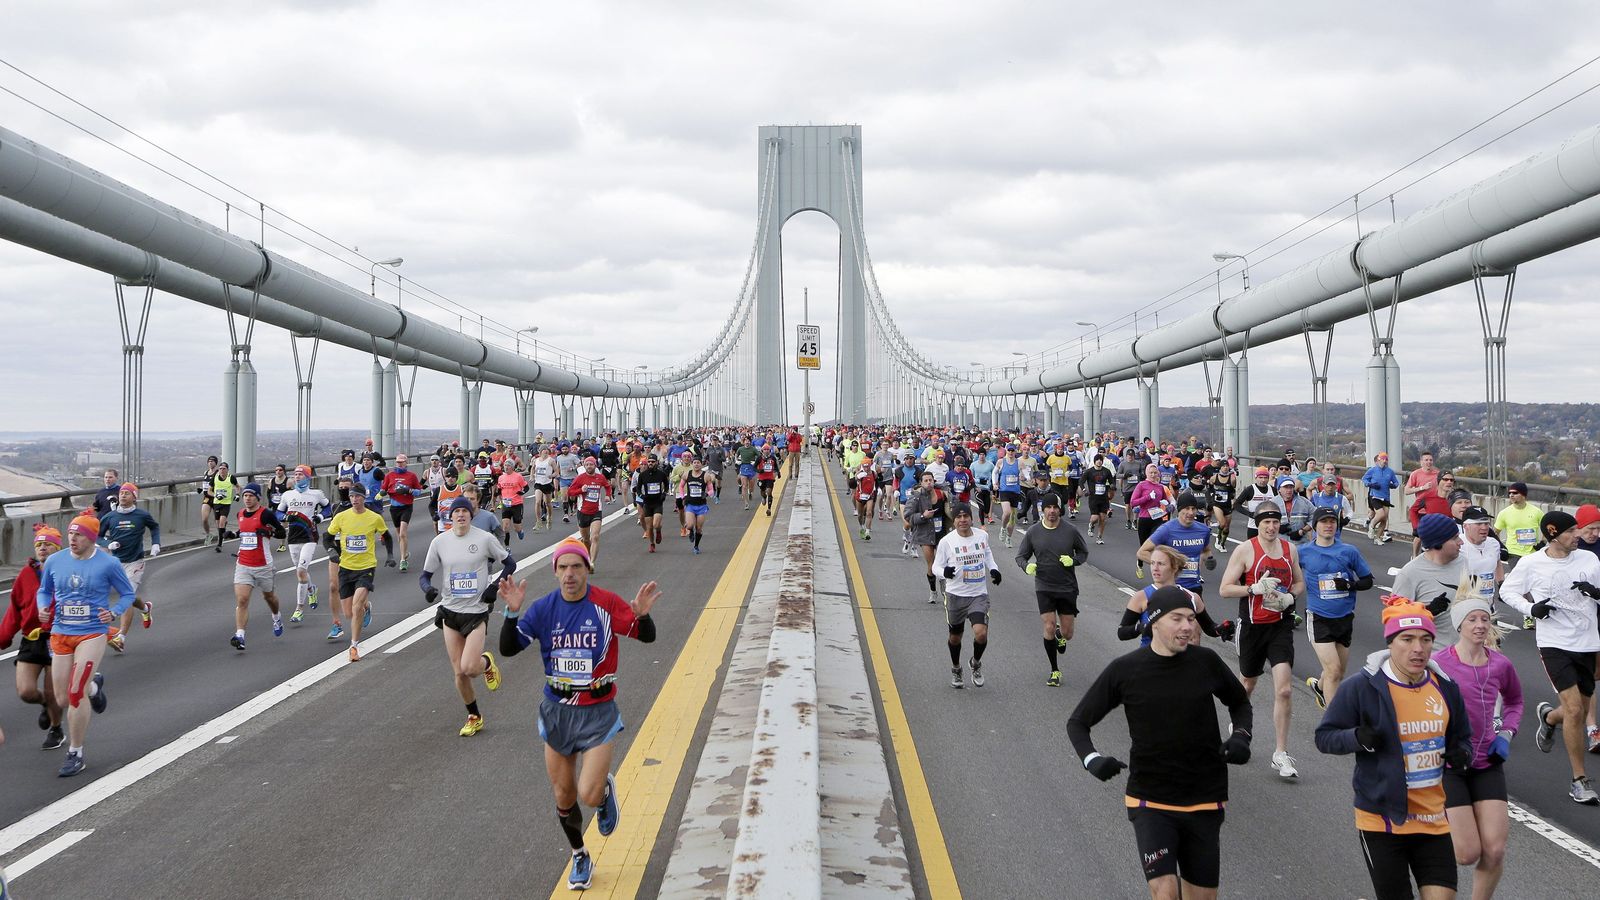 Foto: Imagen de los participantes de la maratón de Nueva York por el puente de Verrazano. (Efe)